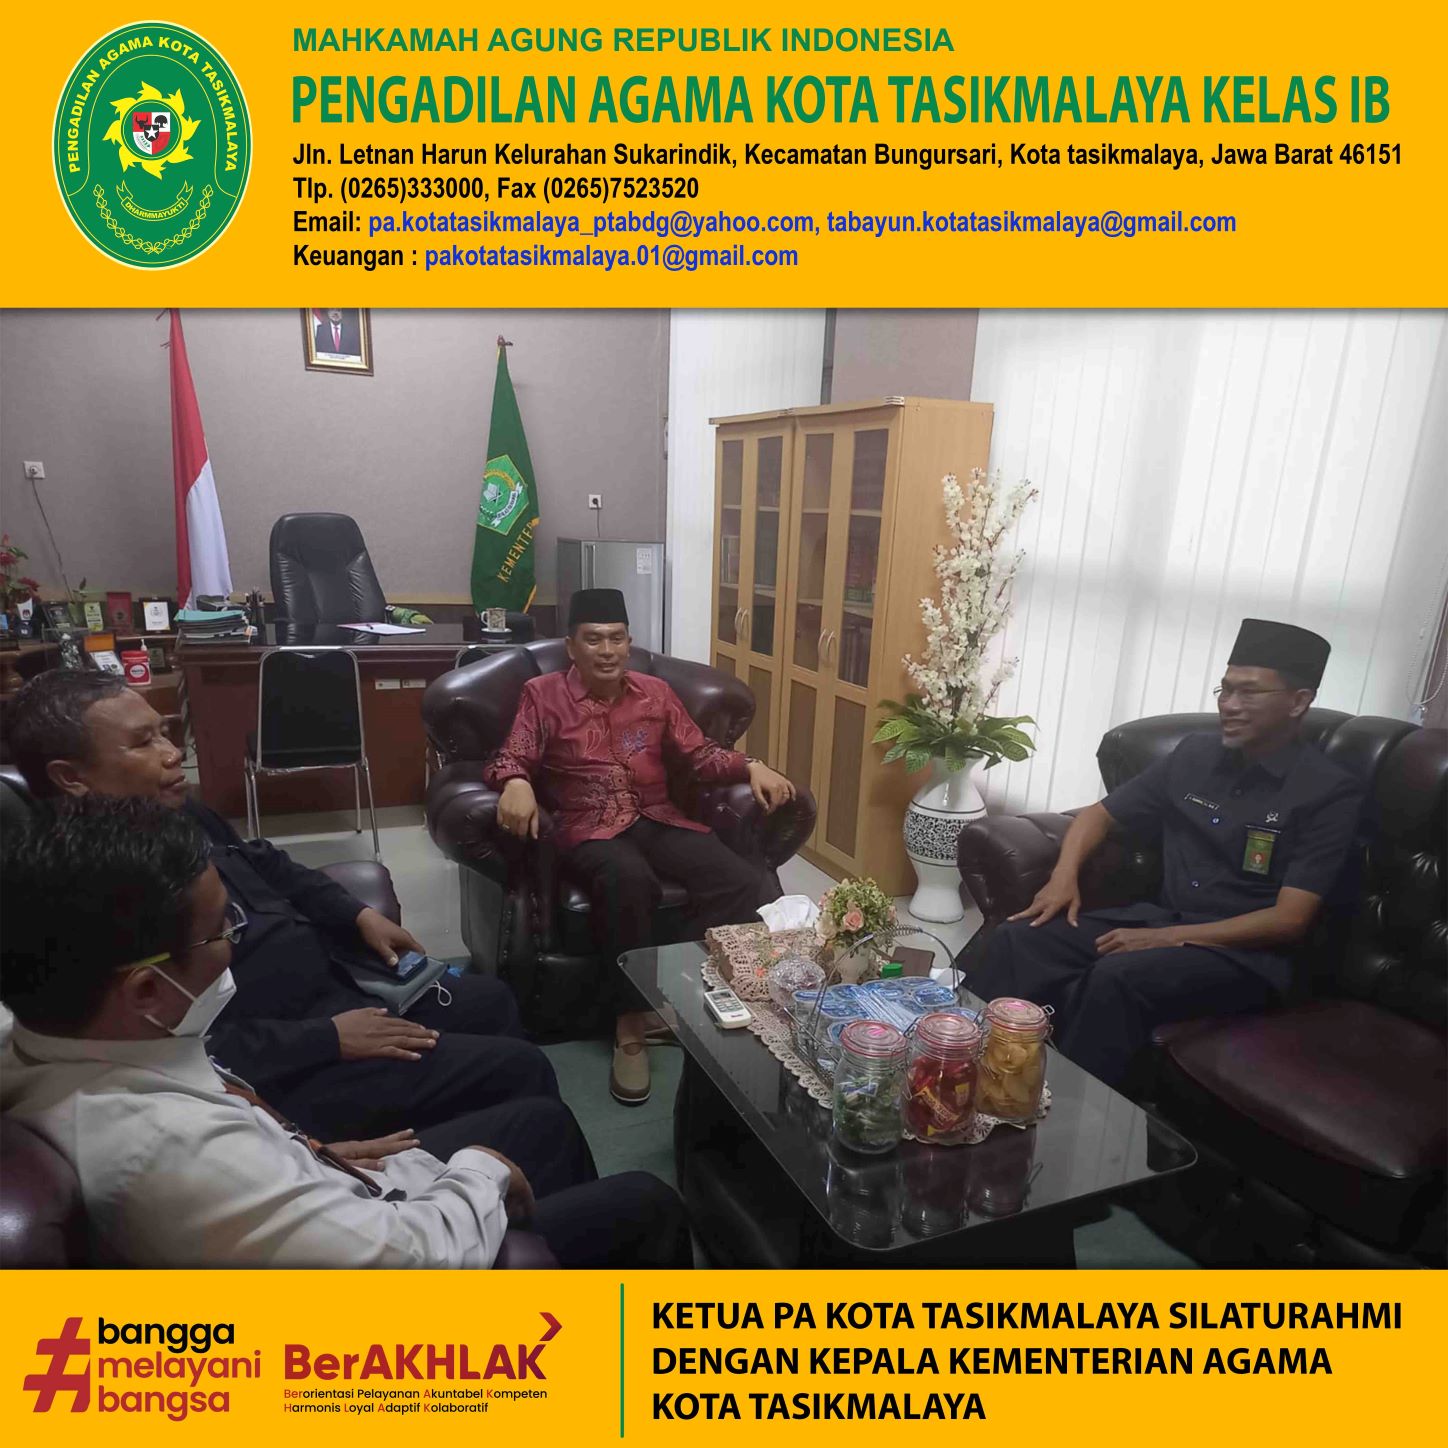 Ketua PA Kota Tasikmalaya Silaturahmi Dengan Kepala Kementerian Agama Kota Tasikmalaya-resize